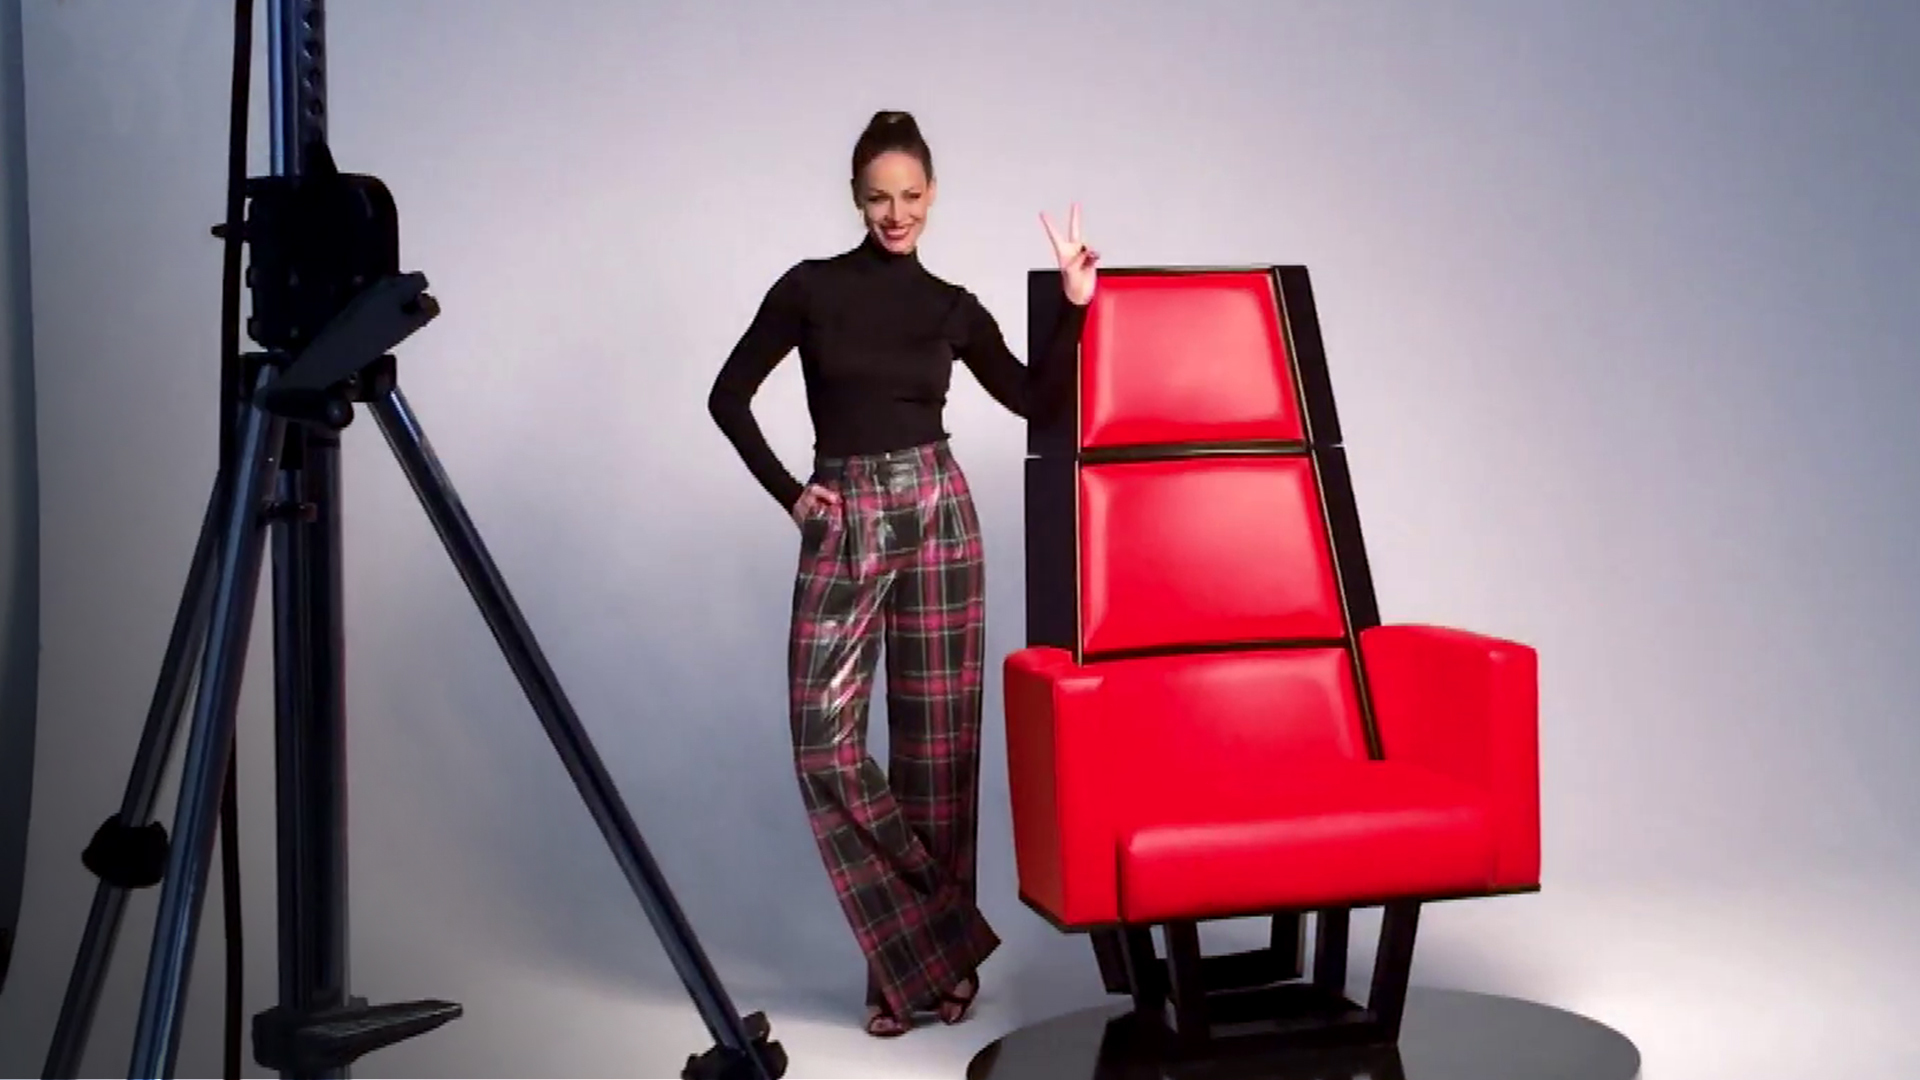 La Voz 2019 Eva González posa con el sillón de 'La Voz' en la espectacular sesión de fotos